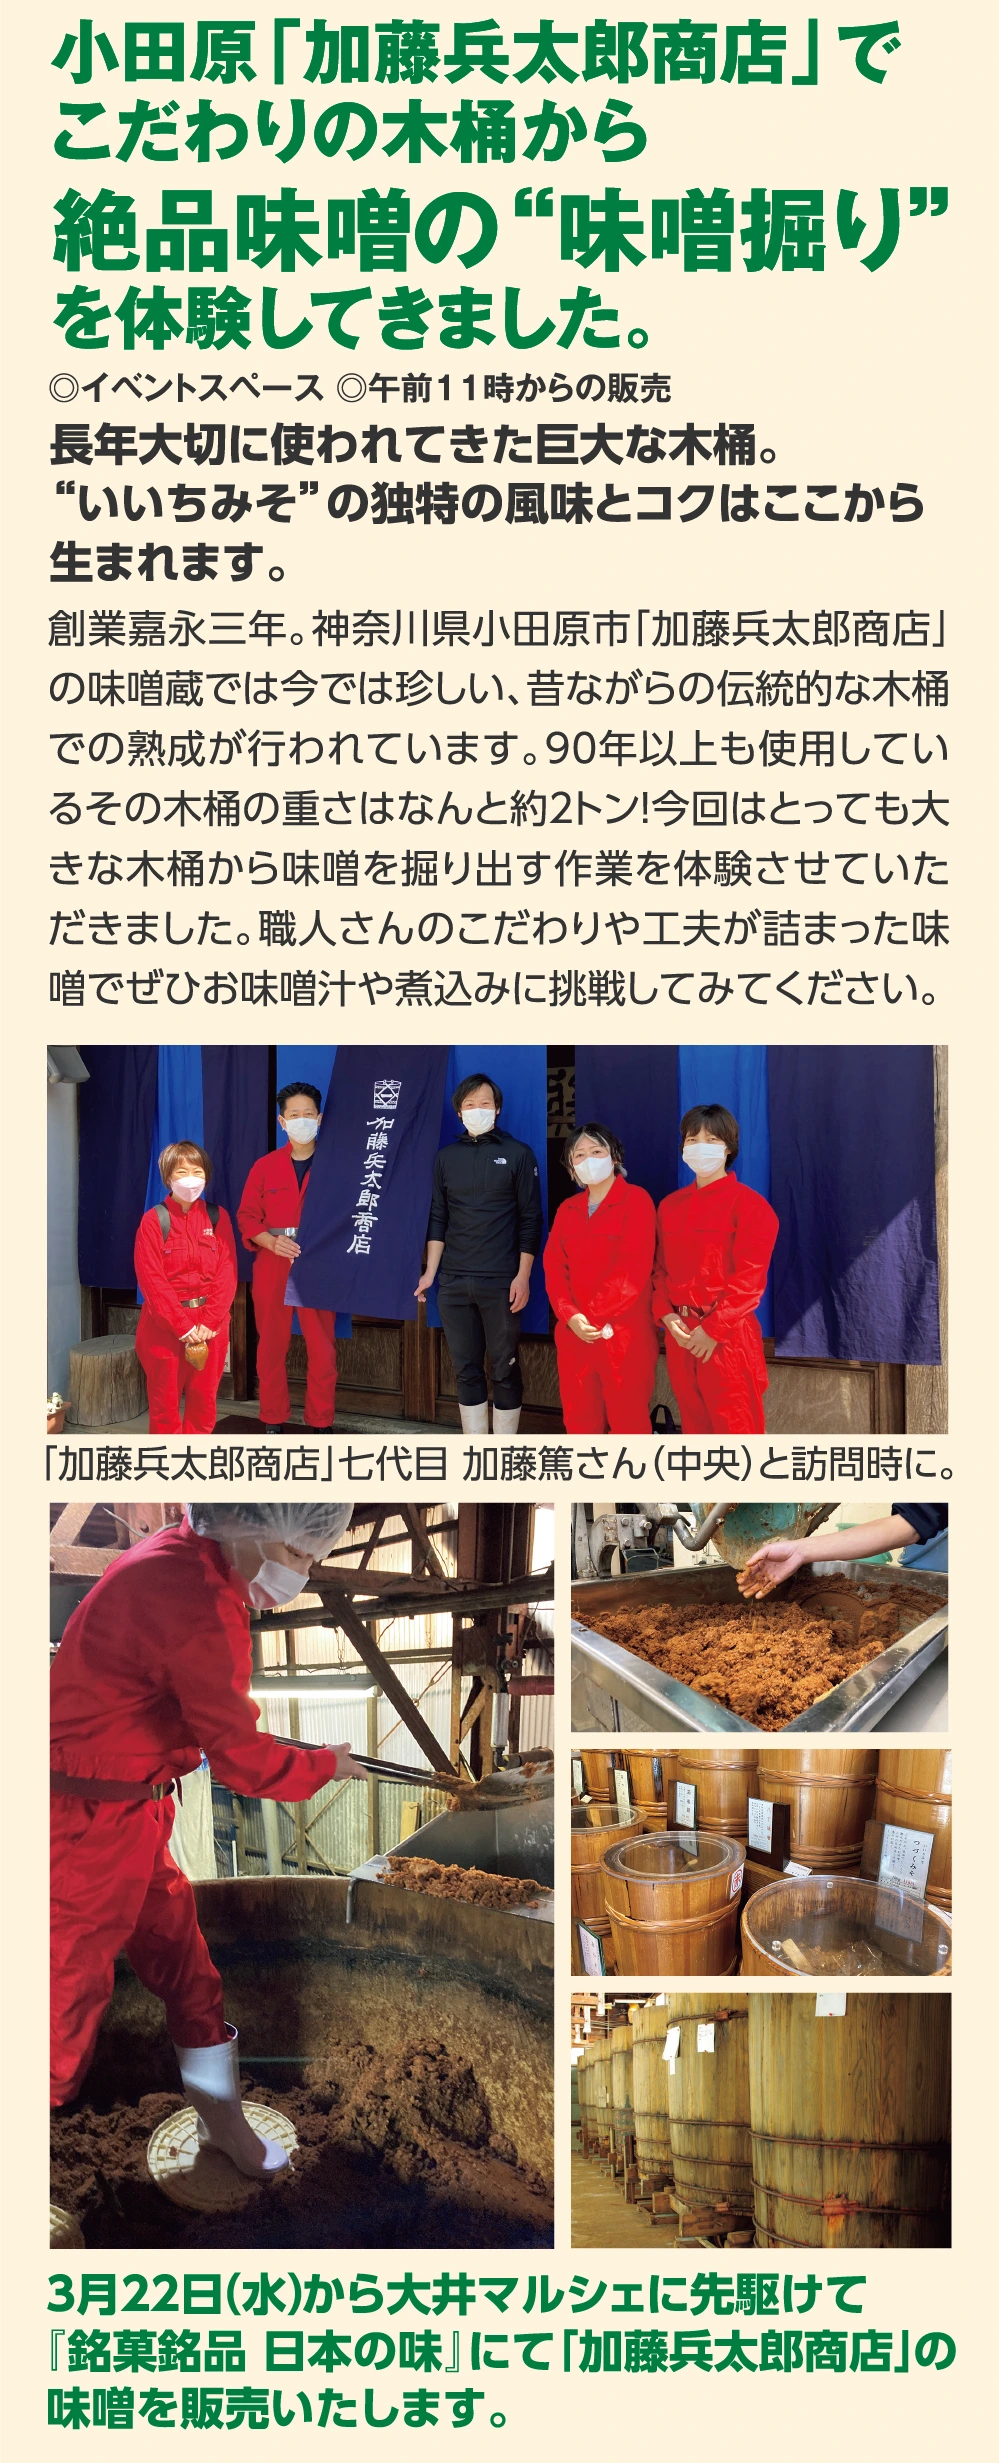 小田原「加藤兵太郎商店」で
					こだわりの木桶から
					絶品味噌の“味噌掘り”
					を体験してきました。
					